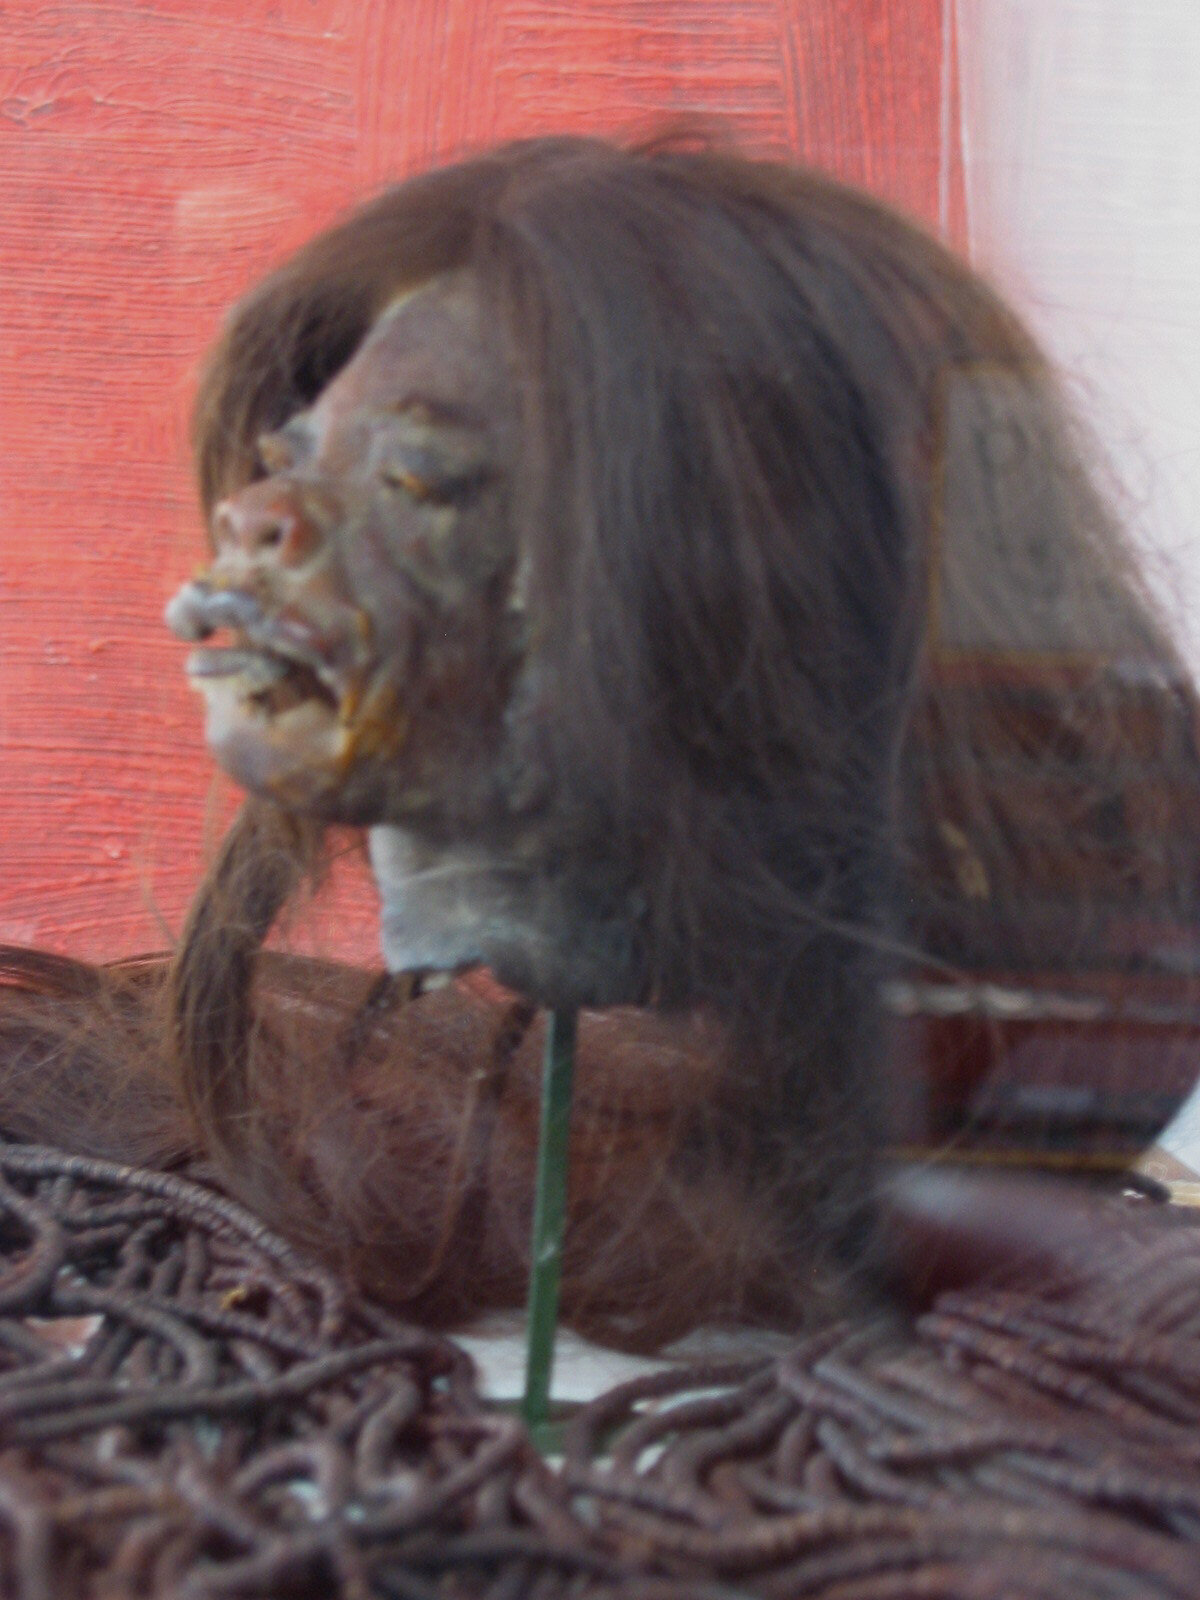 Tsatsa-shrunken head at the museum